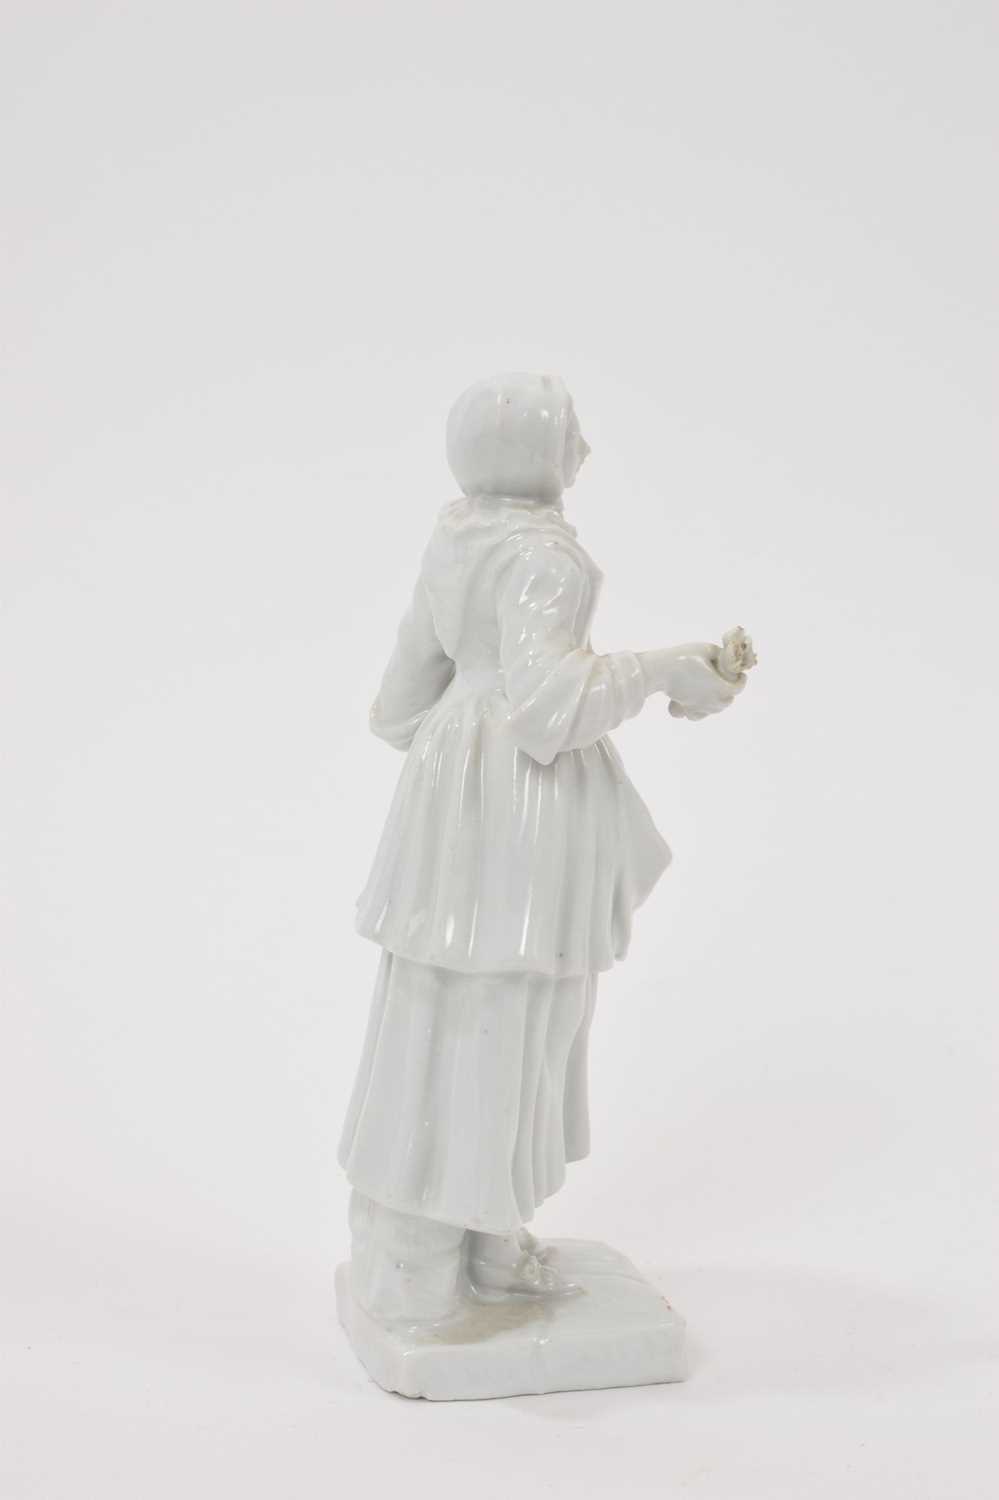 18th century white glazed porcelain figure on square base - Image 3 of 5